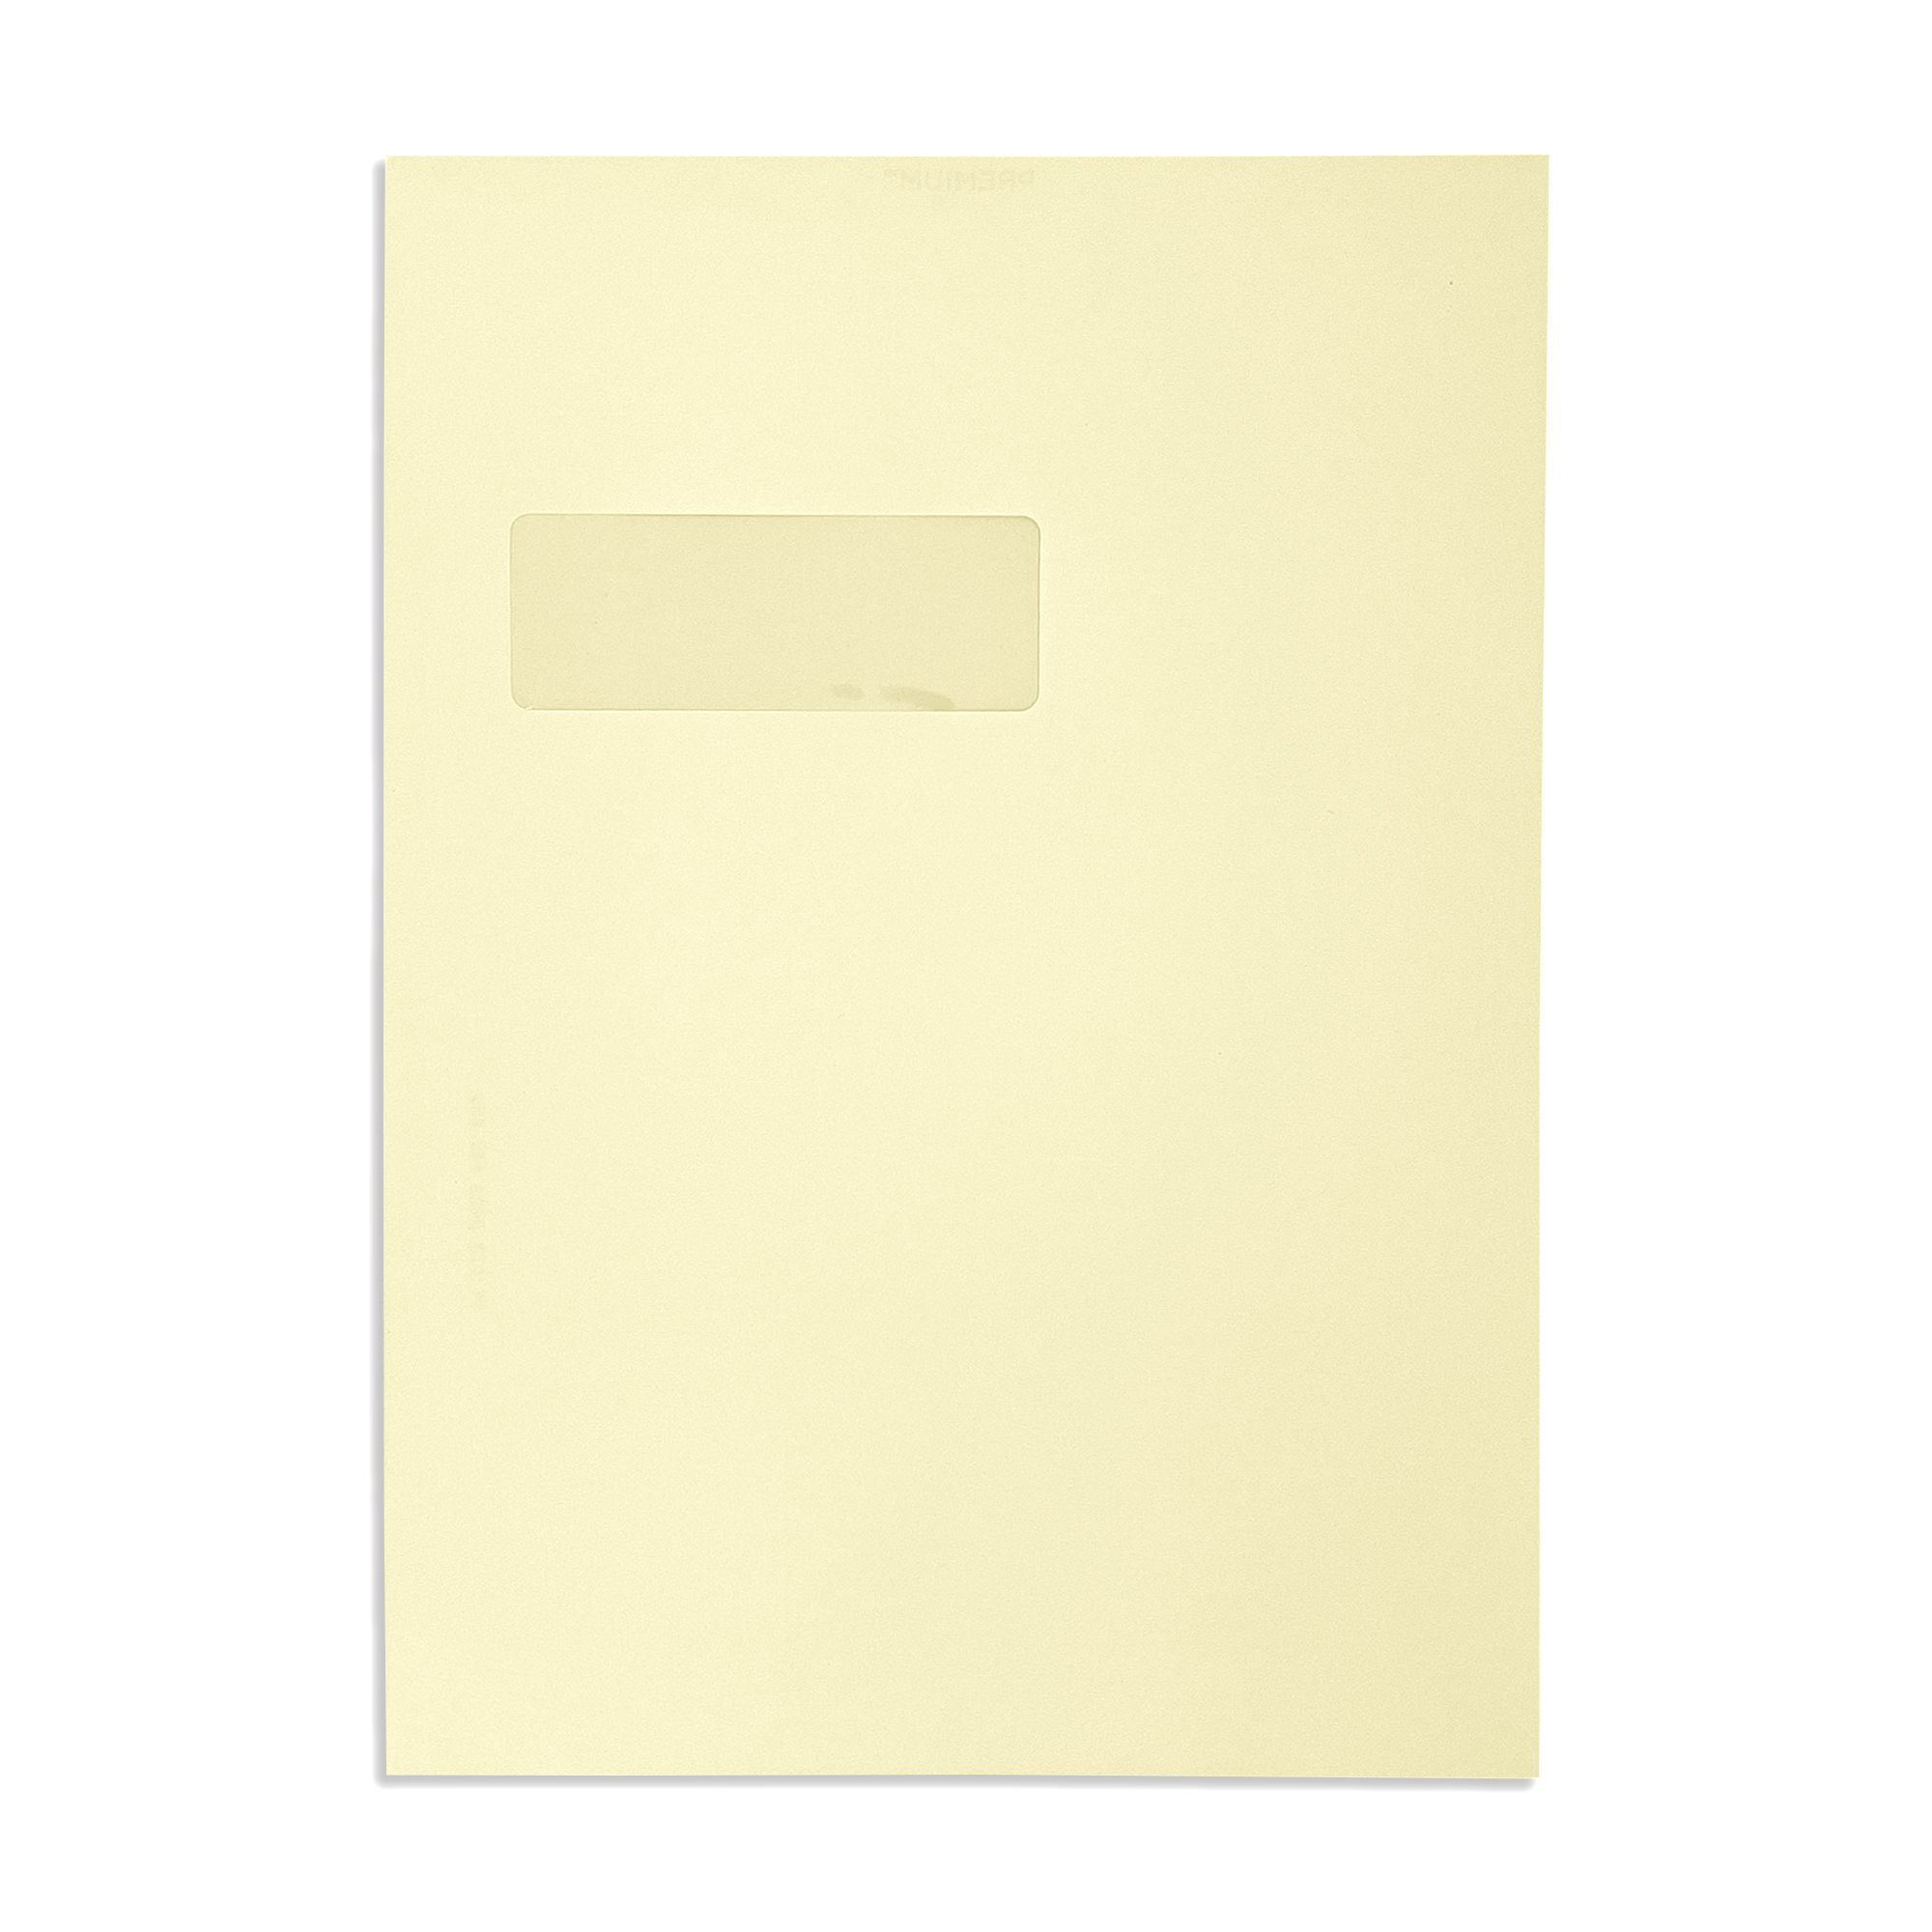 c4-window-vellum-wove-120gsm-wallet-envelopes-front